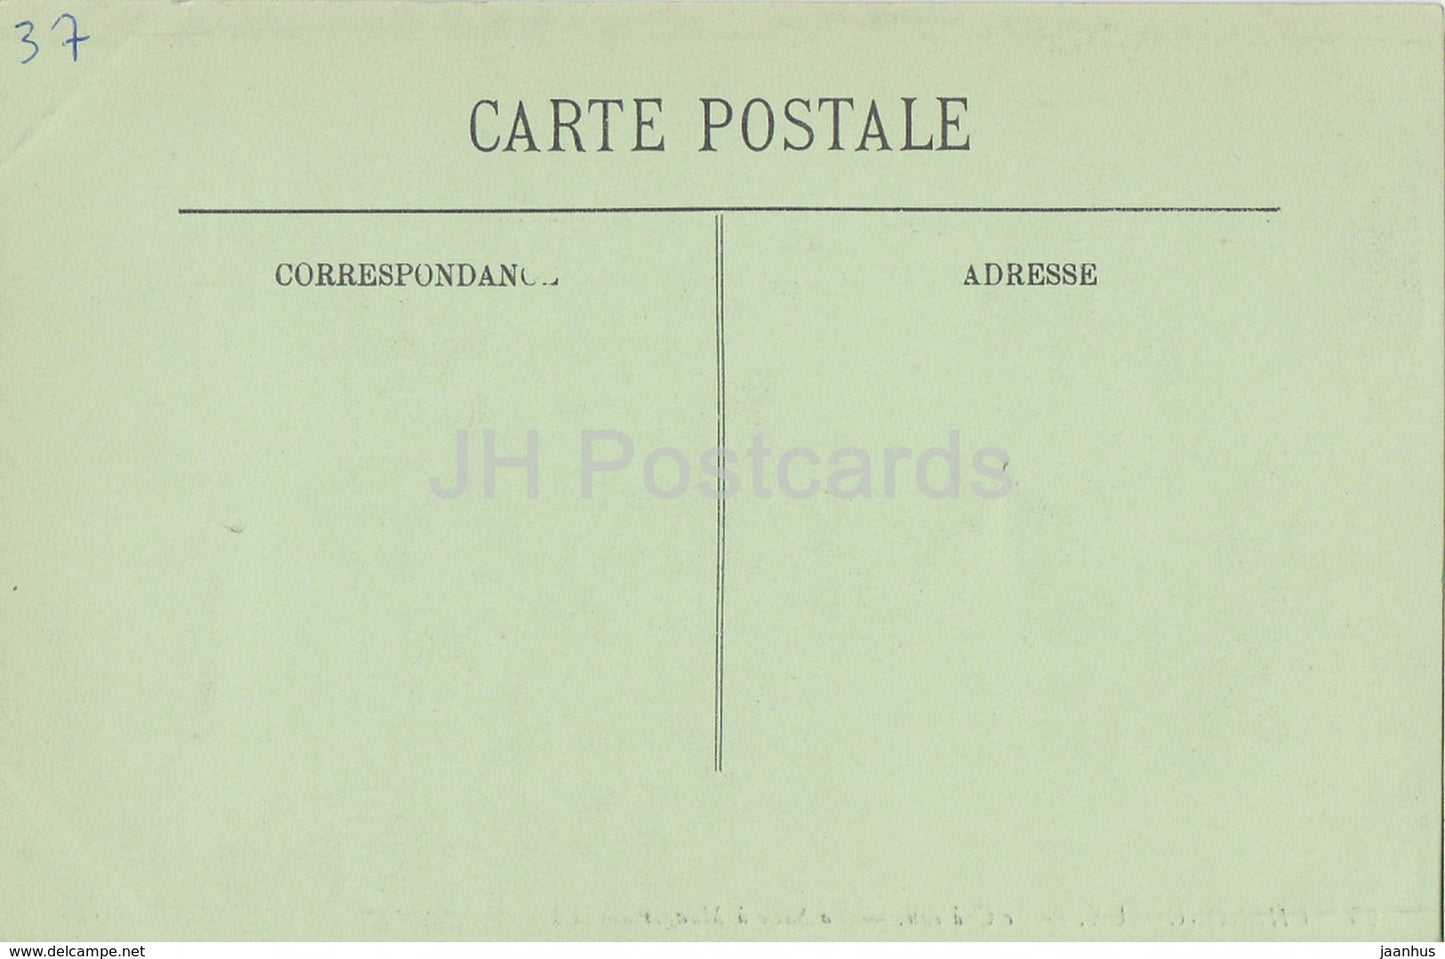 Chenonceaux - Le Chateau - La Salle a Manger - 25 - château - carte postale ancienne - France - inutilisée